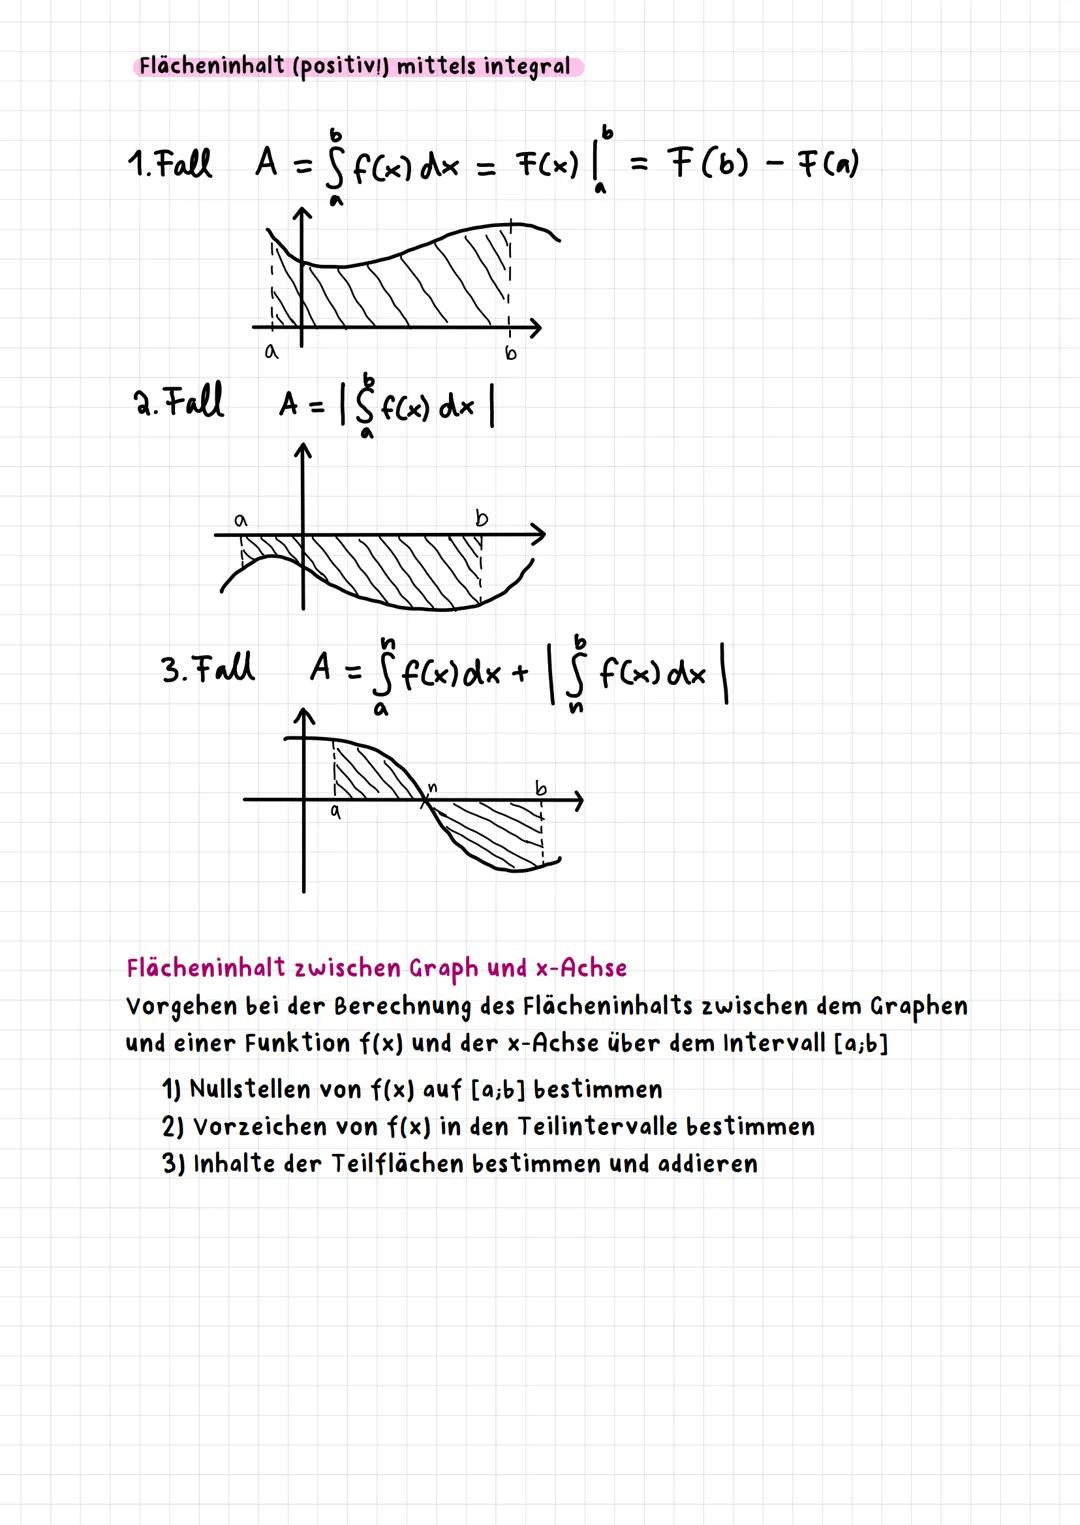 Mathematik Gk '23 Mathe GK Zusammenfassung Abi NRW 2023 Zusammenfassung
Analysis, Analytische Geometrie, Stochastik
->
Analysis
Funktionen
-